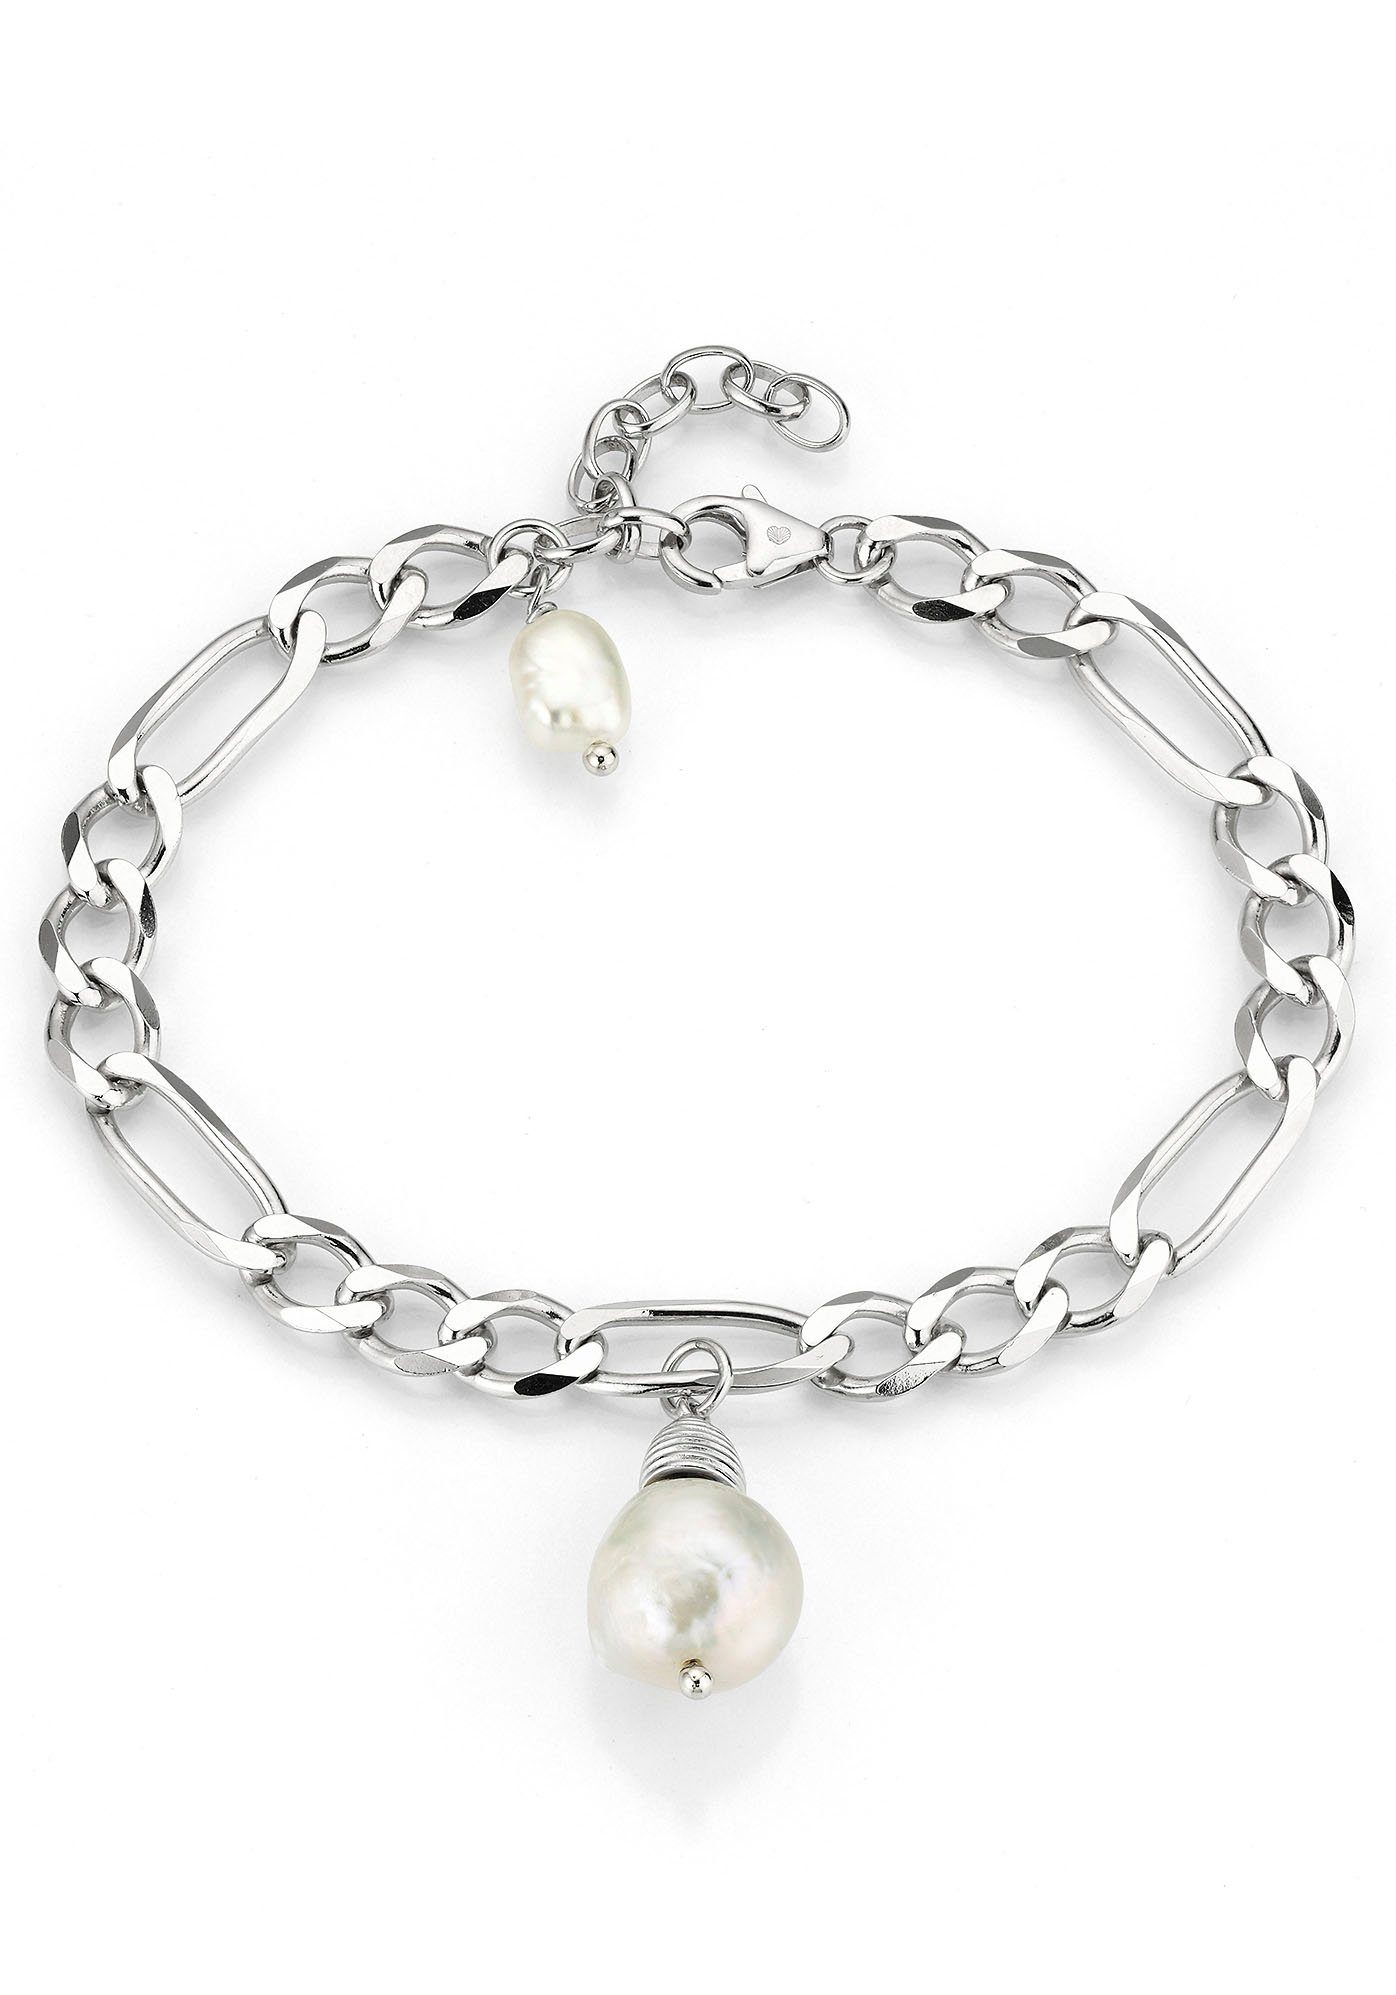 Firetti Perlenarmband Schmuck Geschenk Armschmuck Armkette Perle, zu Kleid, Shirt, Jeans, Sneaker! Anlass Geburtstag Weihnachten | Perlenarmbänder